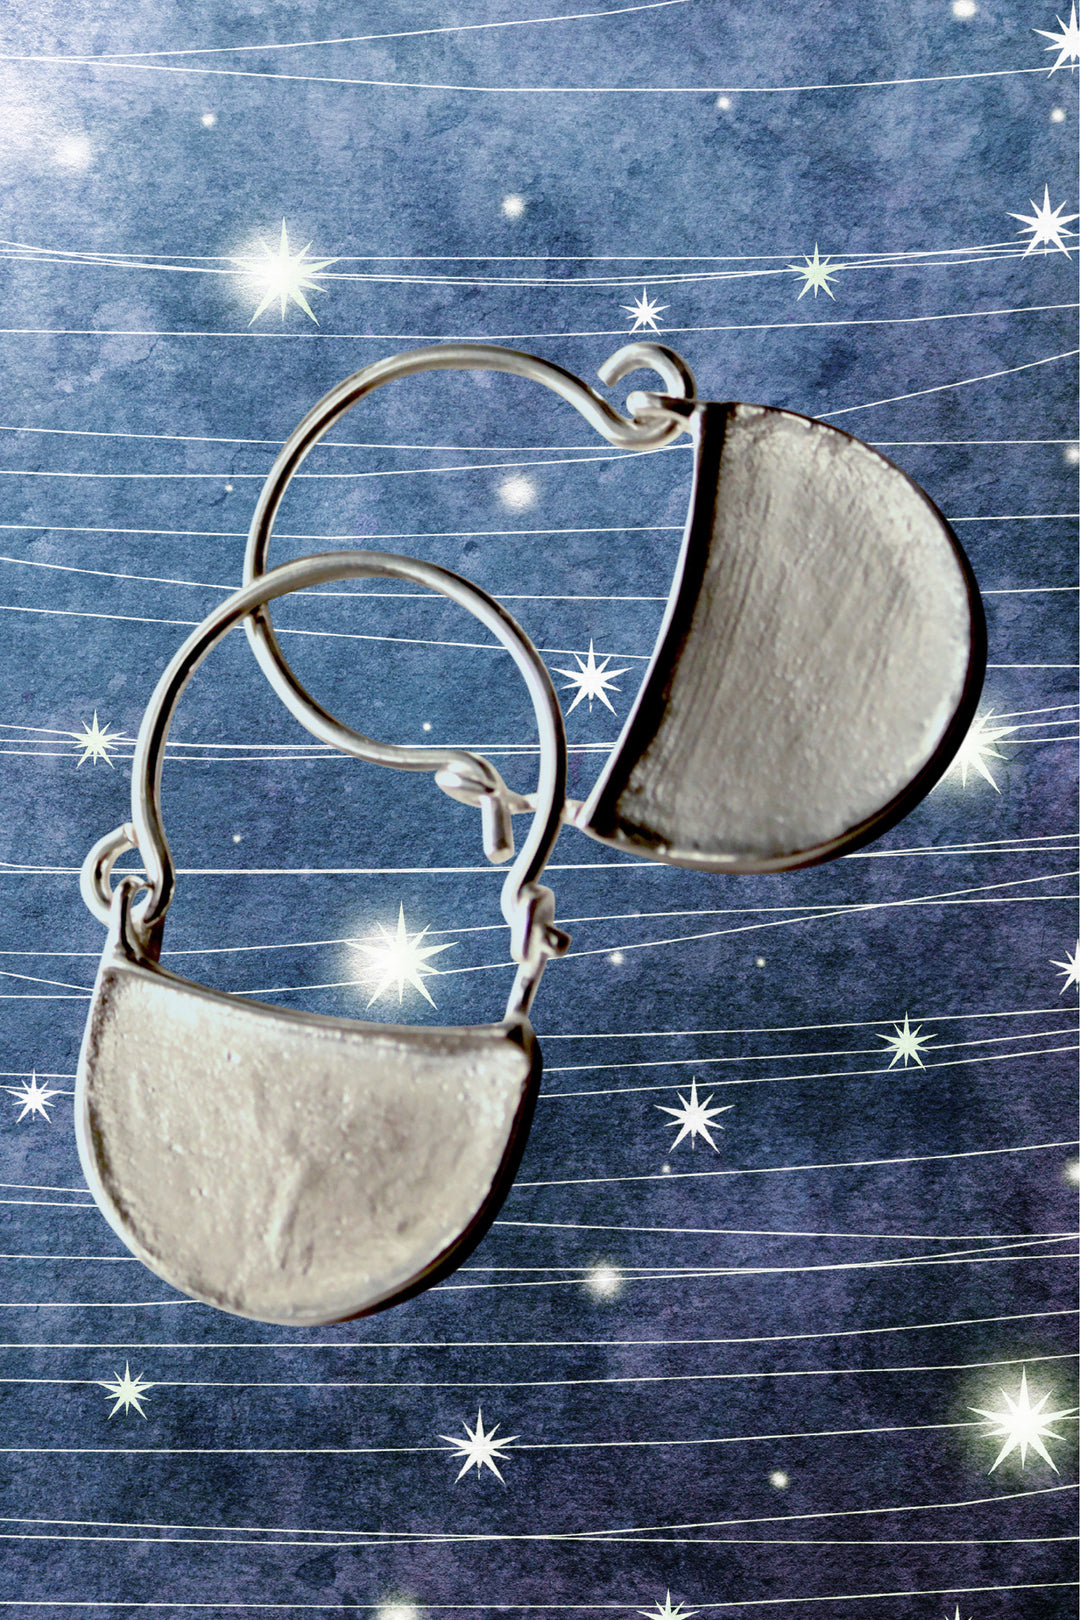 Byzantine earrings silver